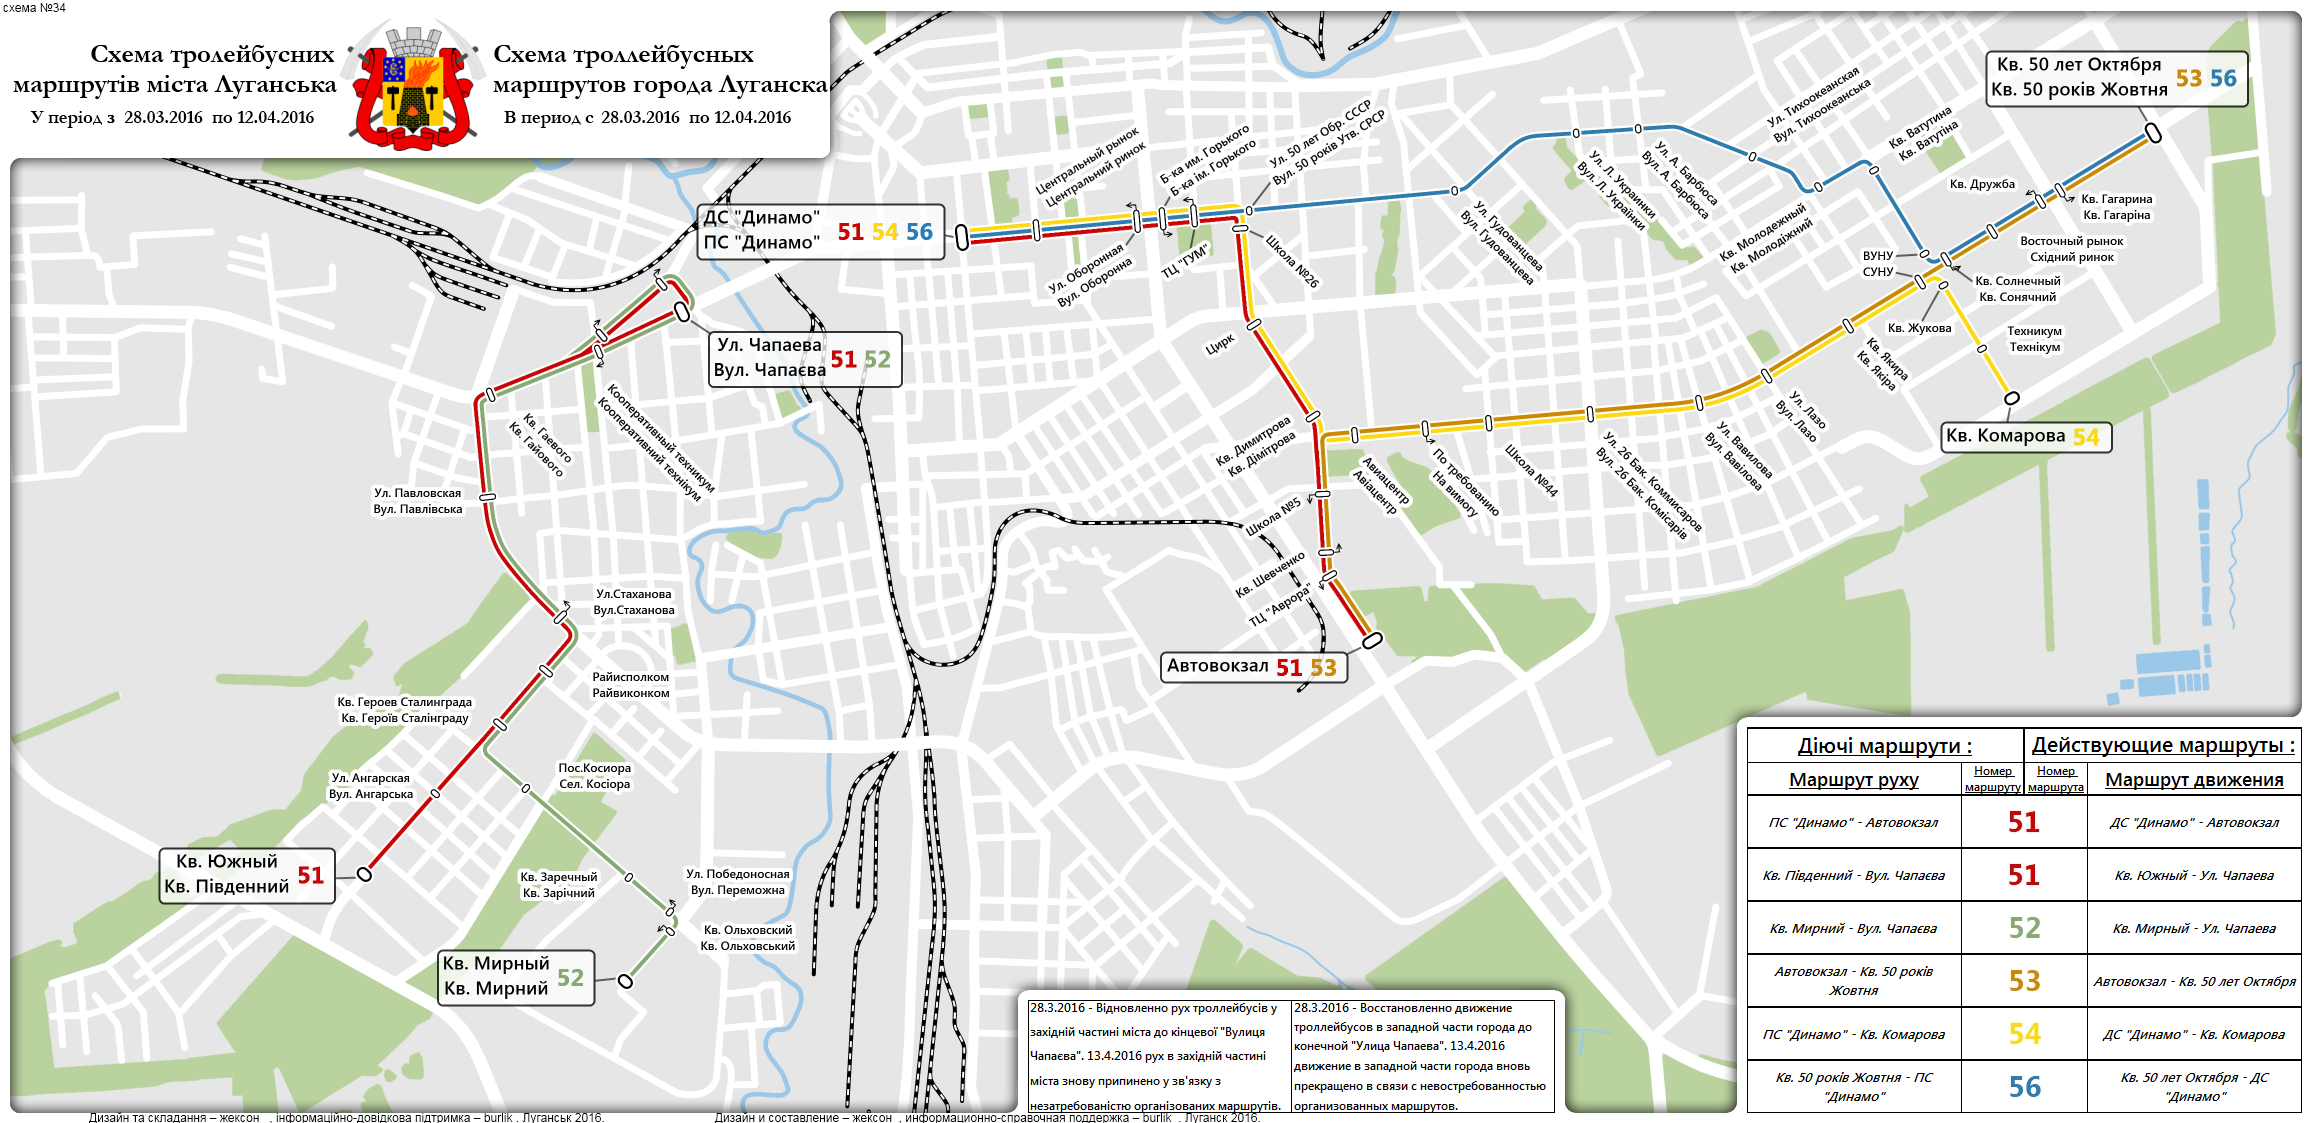 Луганськ — Исторические схемы троллейбусных маршрутов